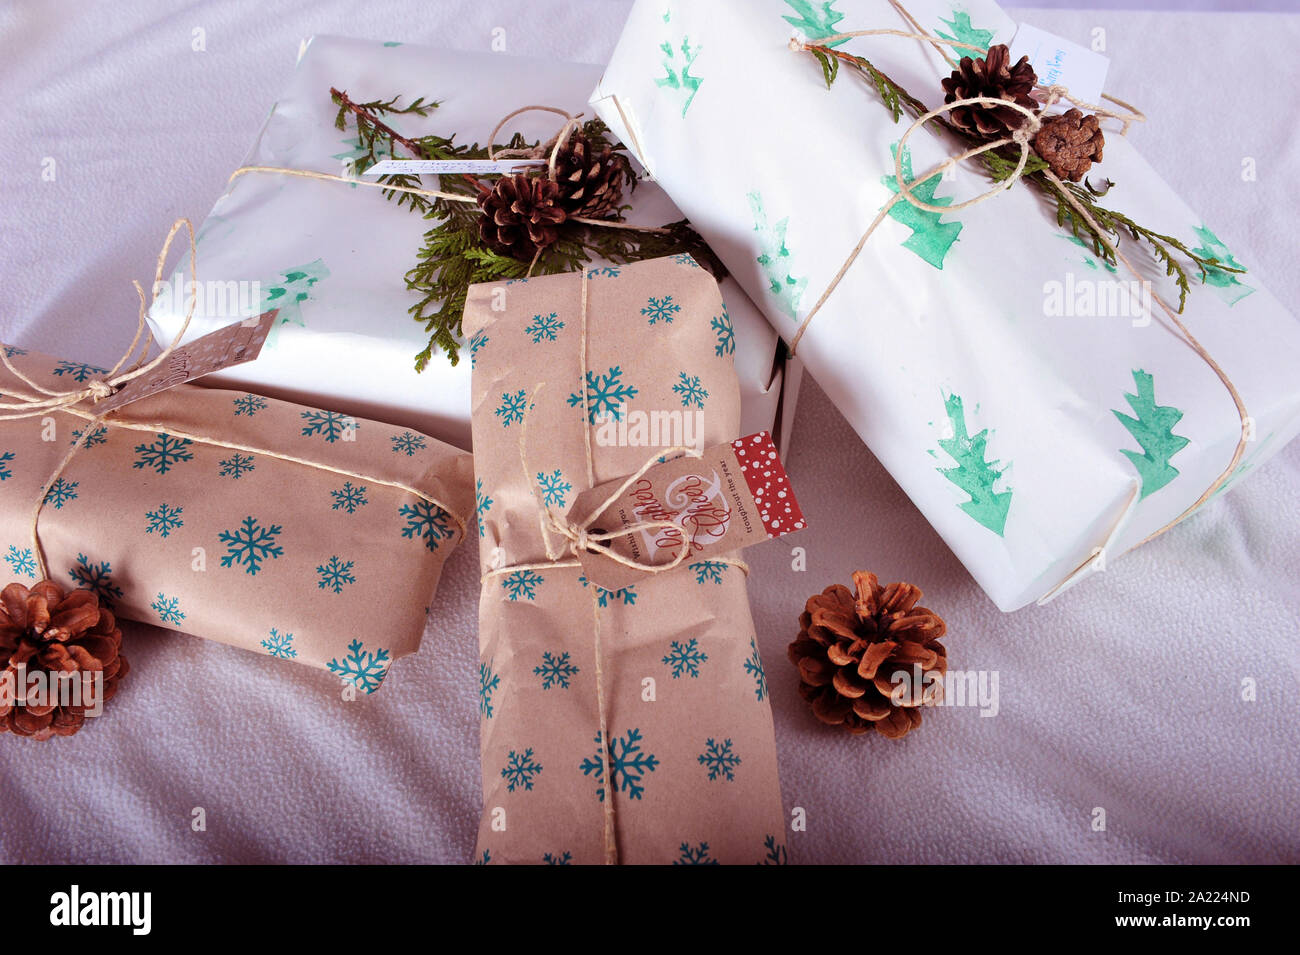 Cadeaux de Noël enveloppés dans du papier d'emballage fait maison. Papier  écologique et pinecones. Papier cadeau rustique Photo Stock - Alamy